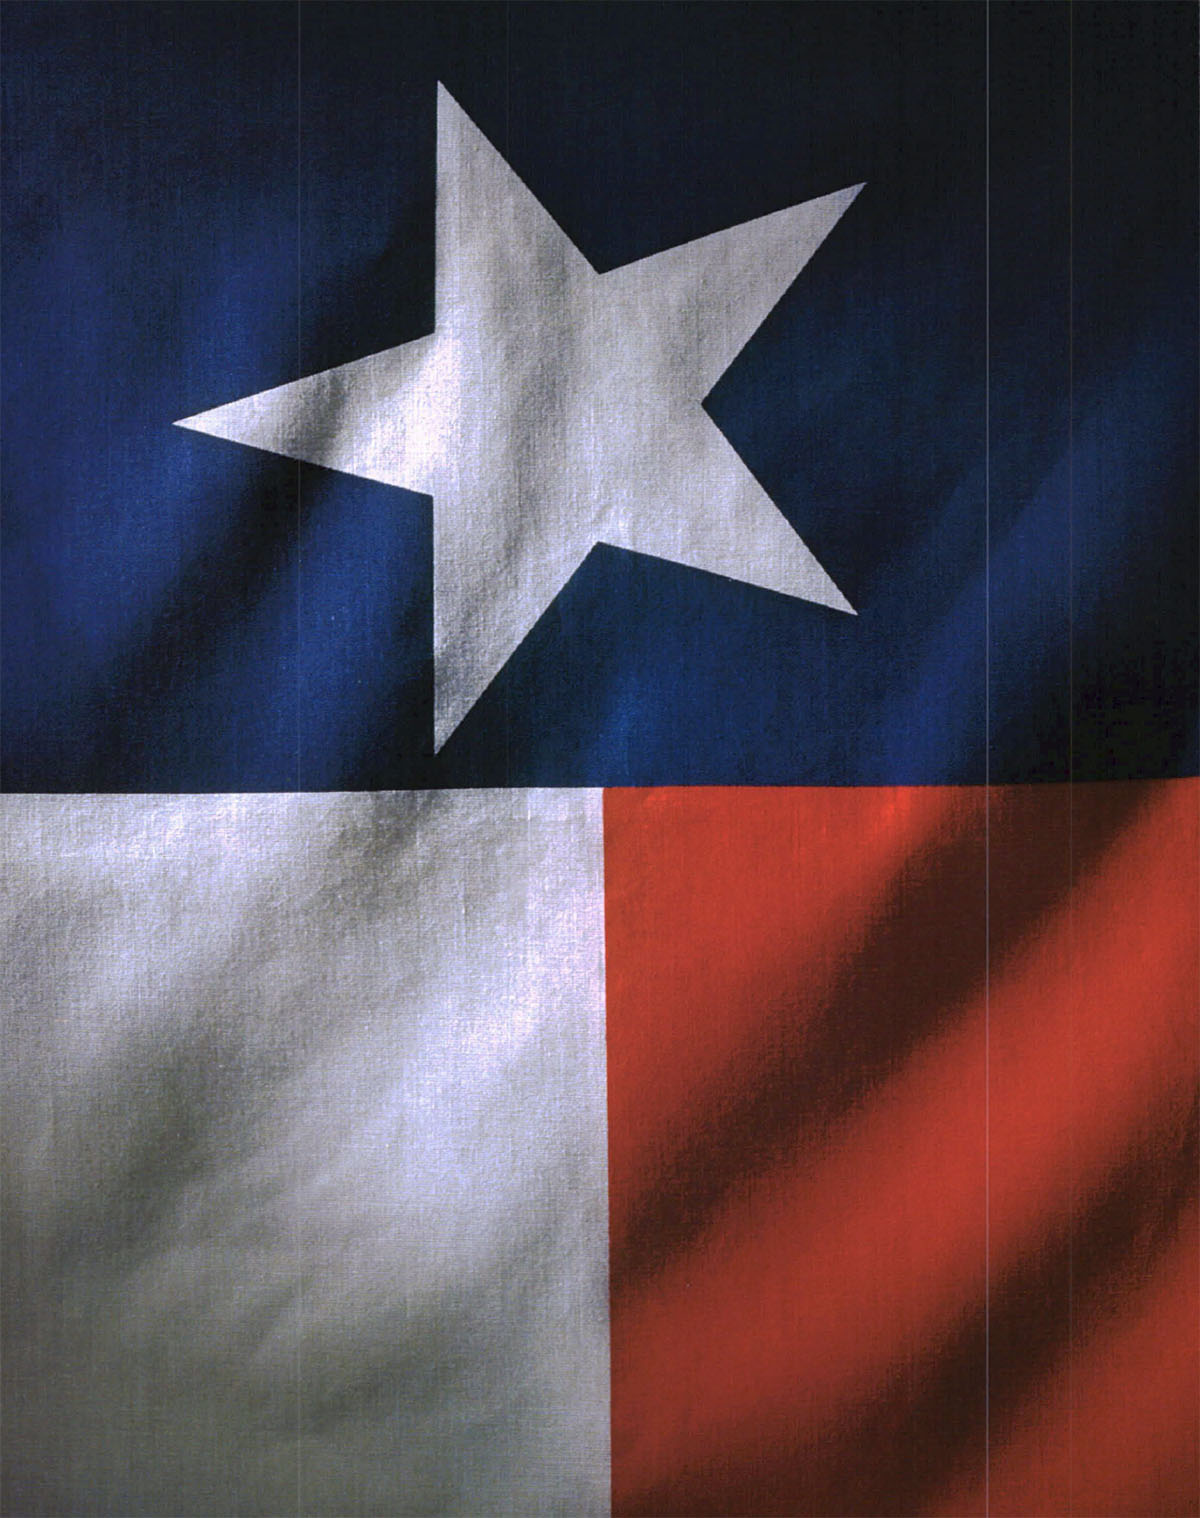 A photograph of a dimly-lit Texas flag 